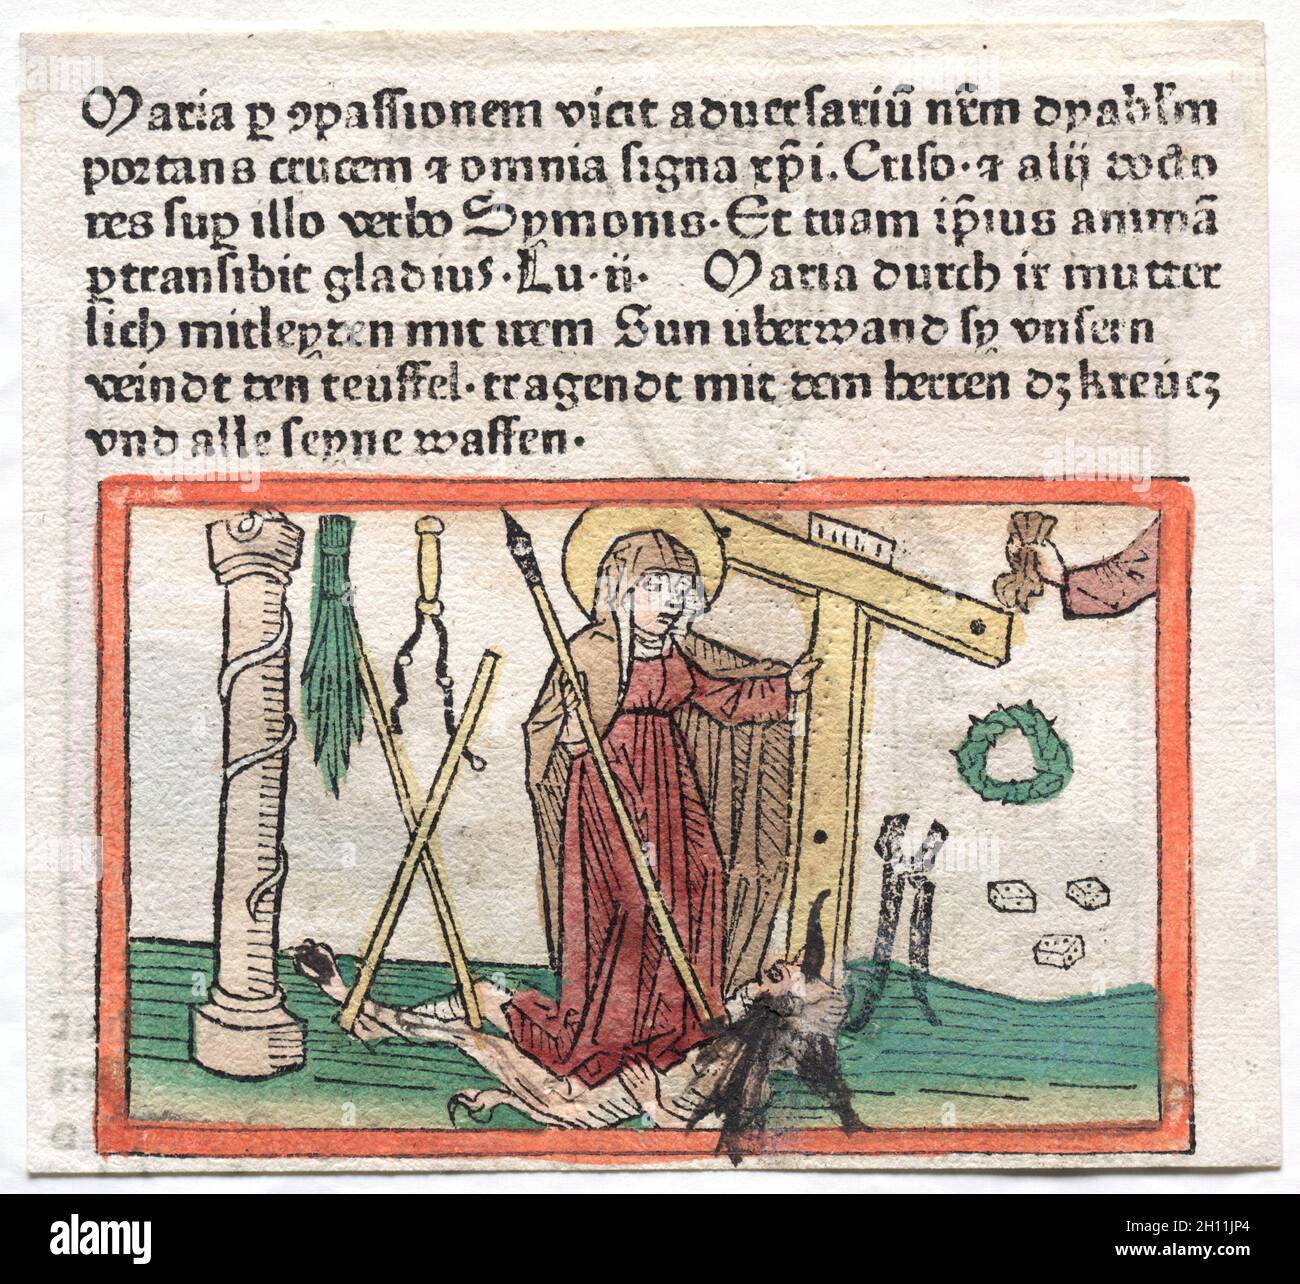 Spiegel Menslicher Behaltnis: La Vergine Maria che supera un diavolo, 1400. Germania, XV secolo. Taglio del legno; Foto Stock